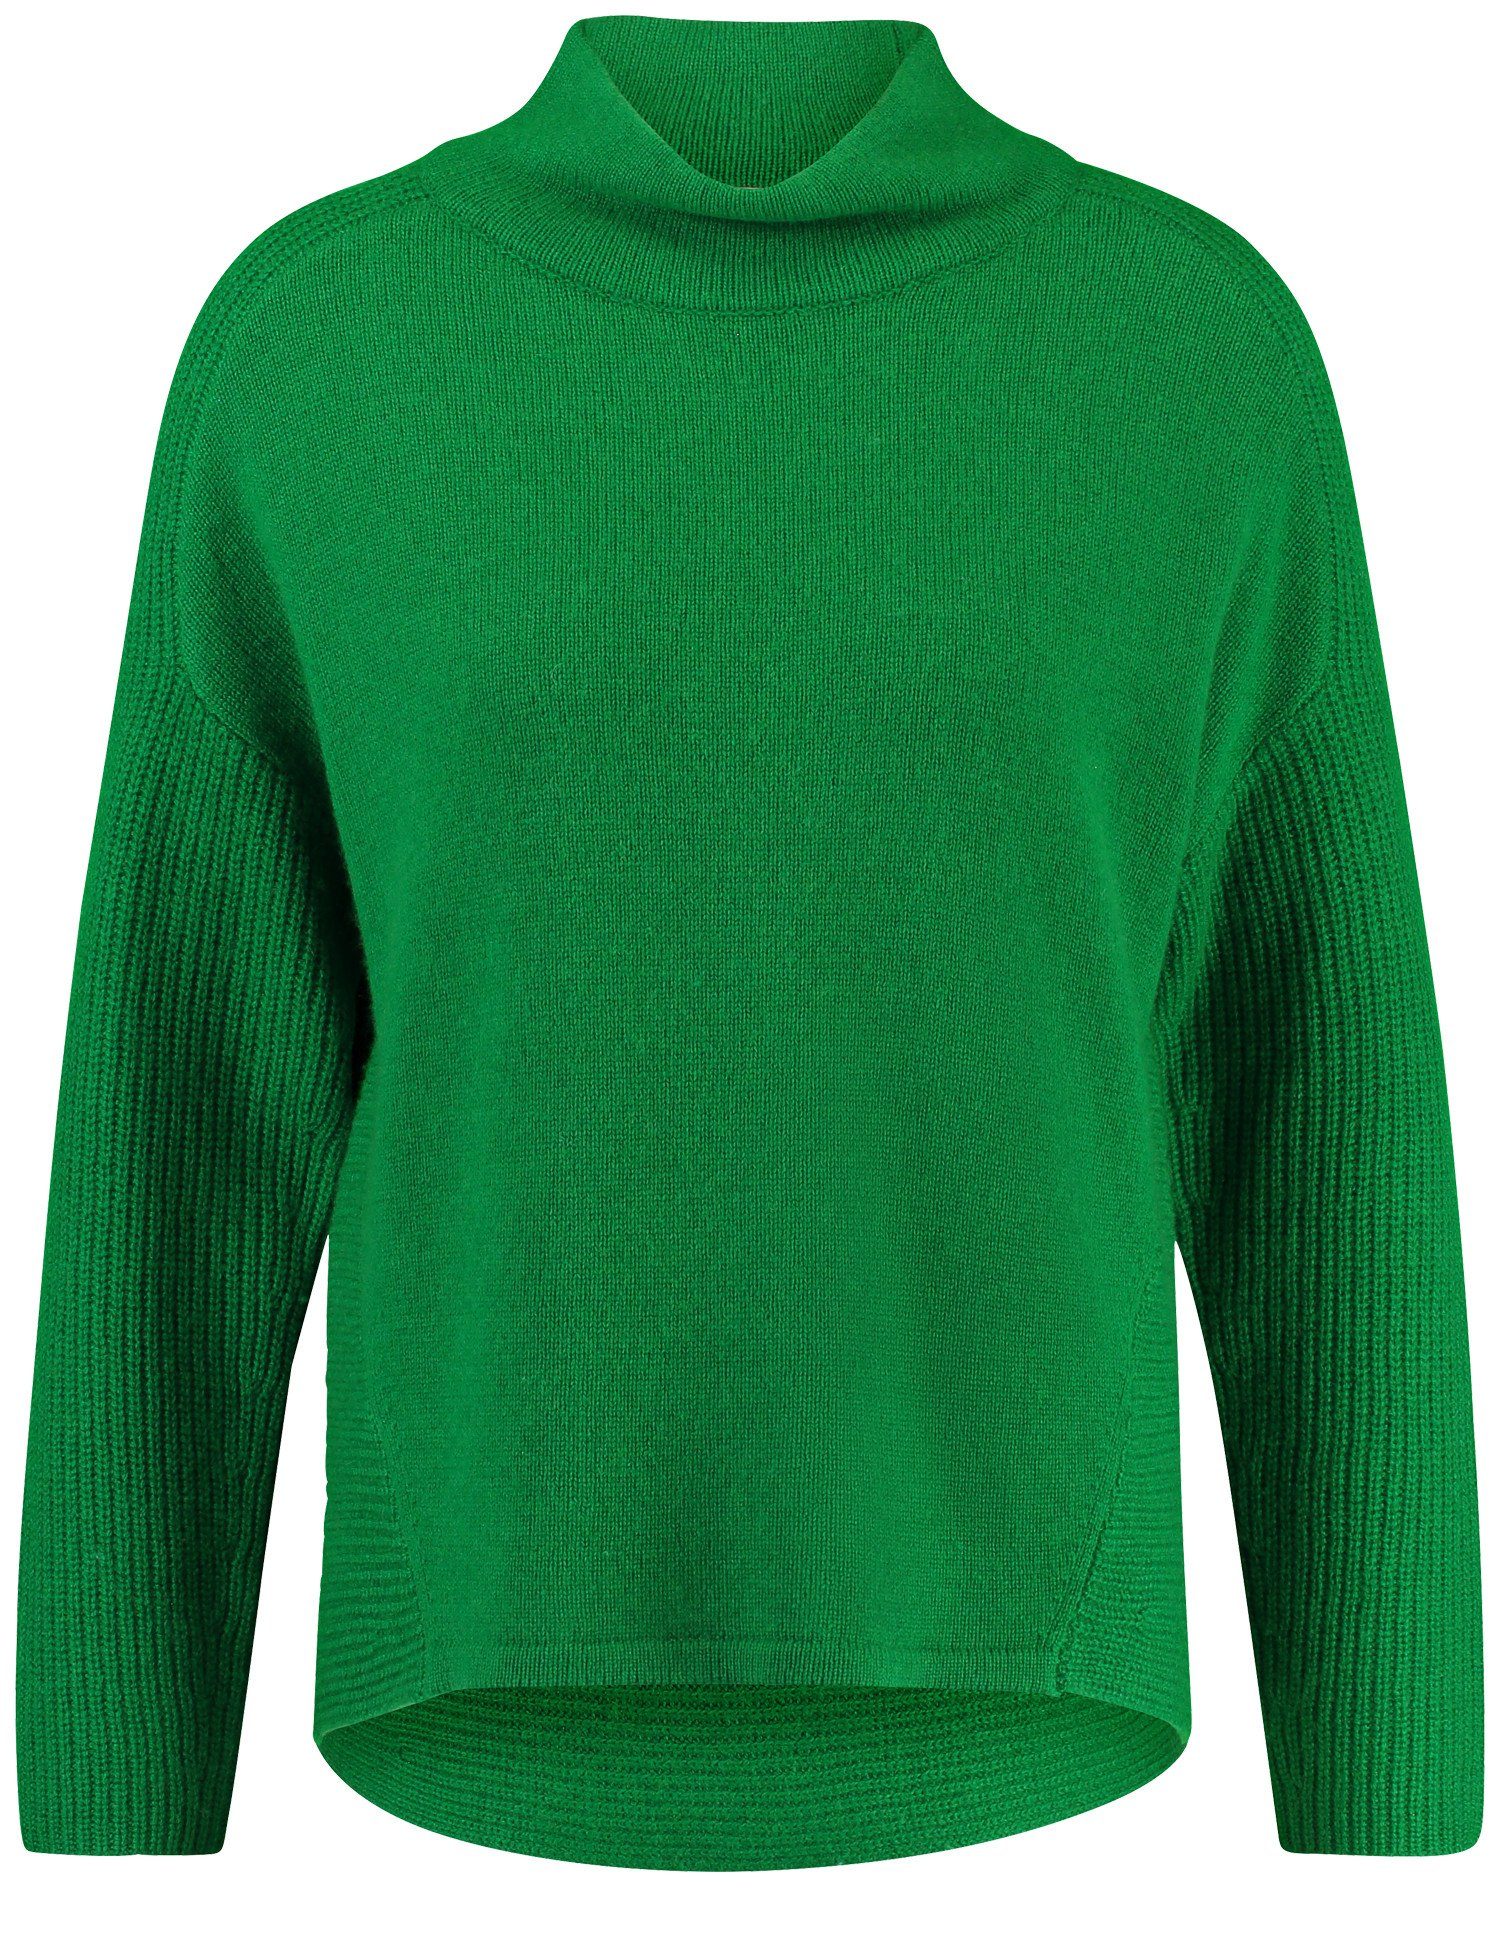 GERRY WEBER Rundhalspullover Pullover und Kaschmiranteil Green Bright Strick-Mix aus